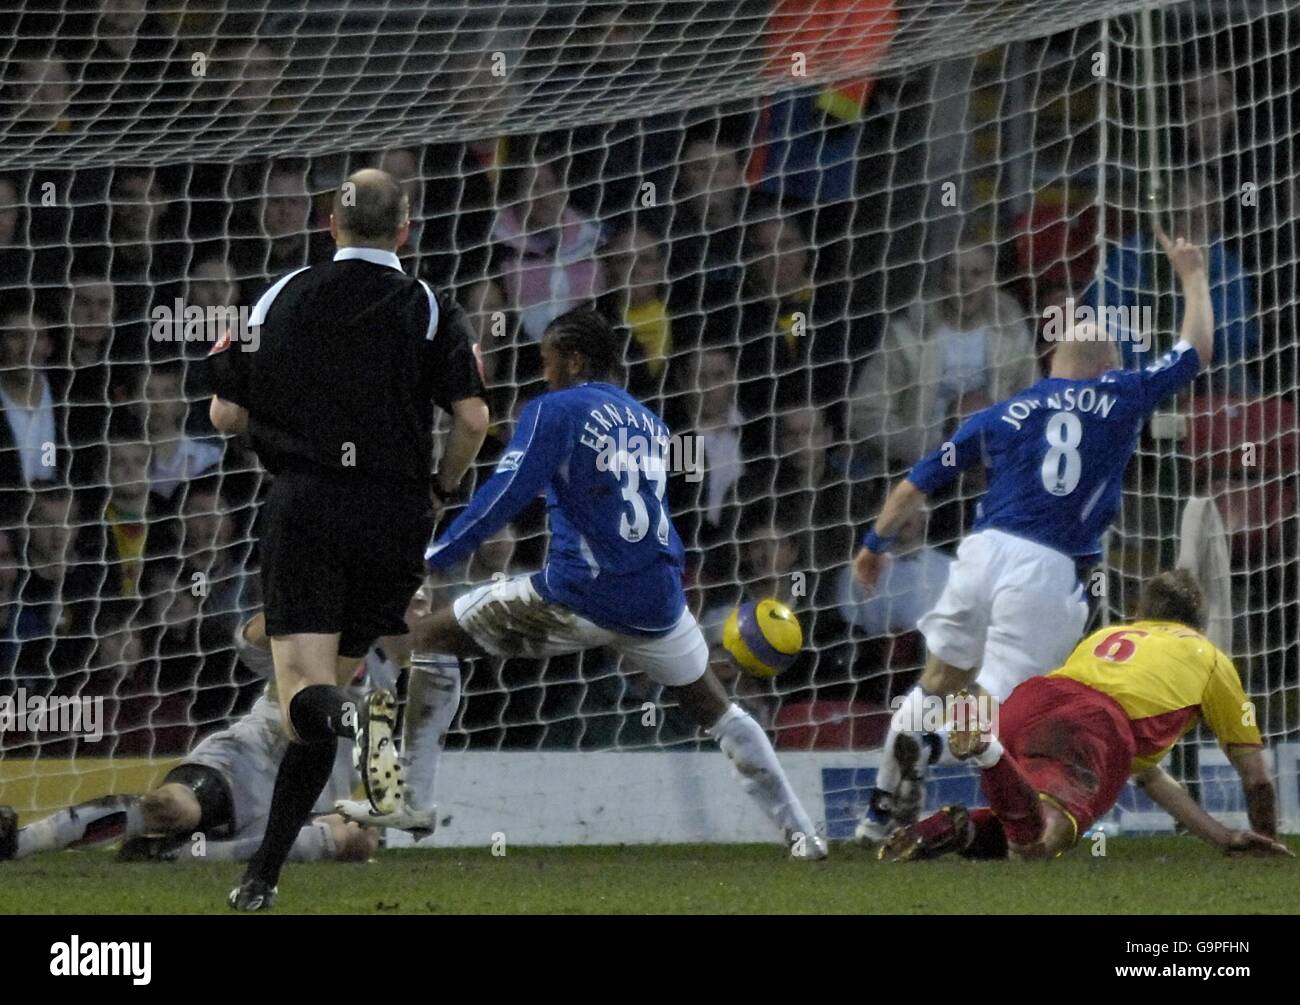 Calcio - fa Barclays Premiership - Watford v Everton - Vicarage Road. Manuel Fernandes di Everton segna l'obiettivo di apertura del gioco Foto Stock